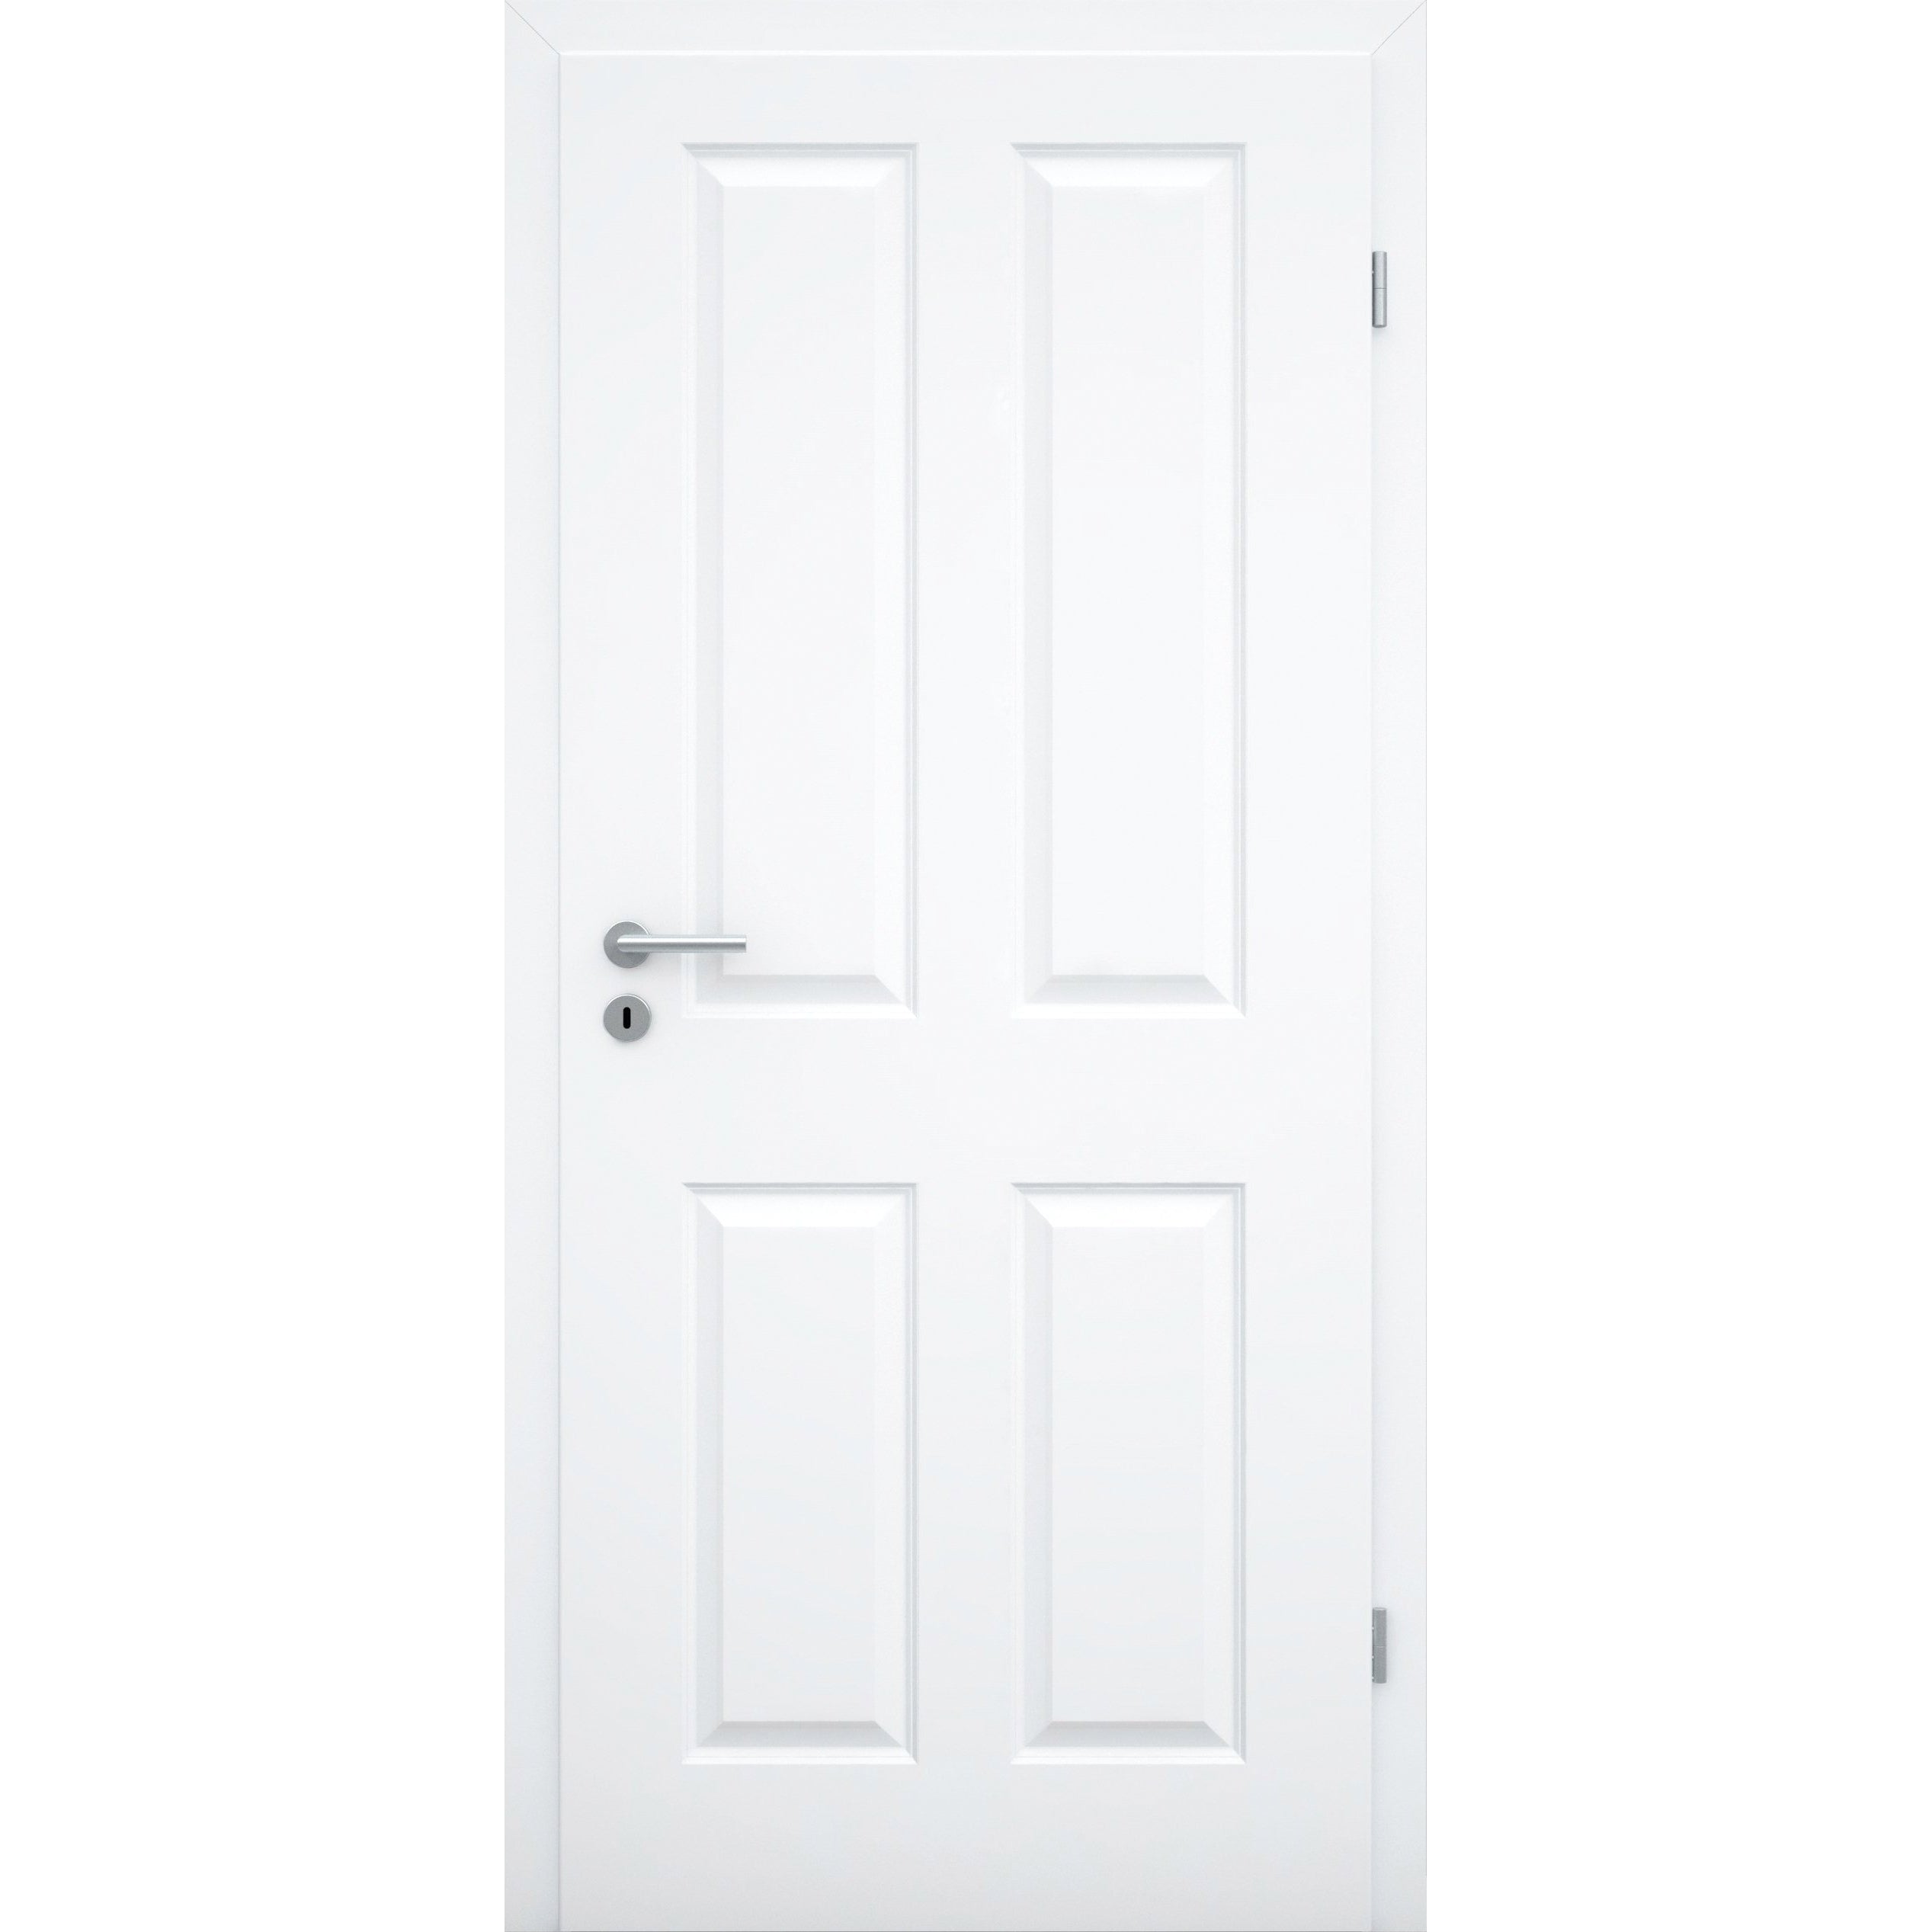 Zimmertür brillant-weiß 4 Kassetten Designkante - Modell Stiltür K43